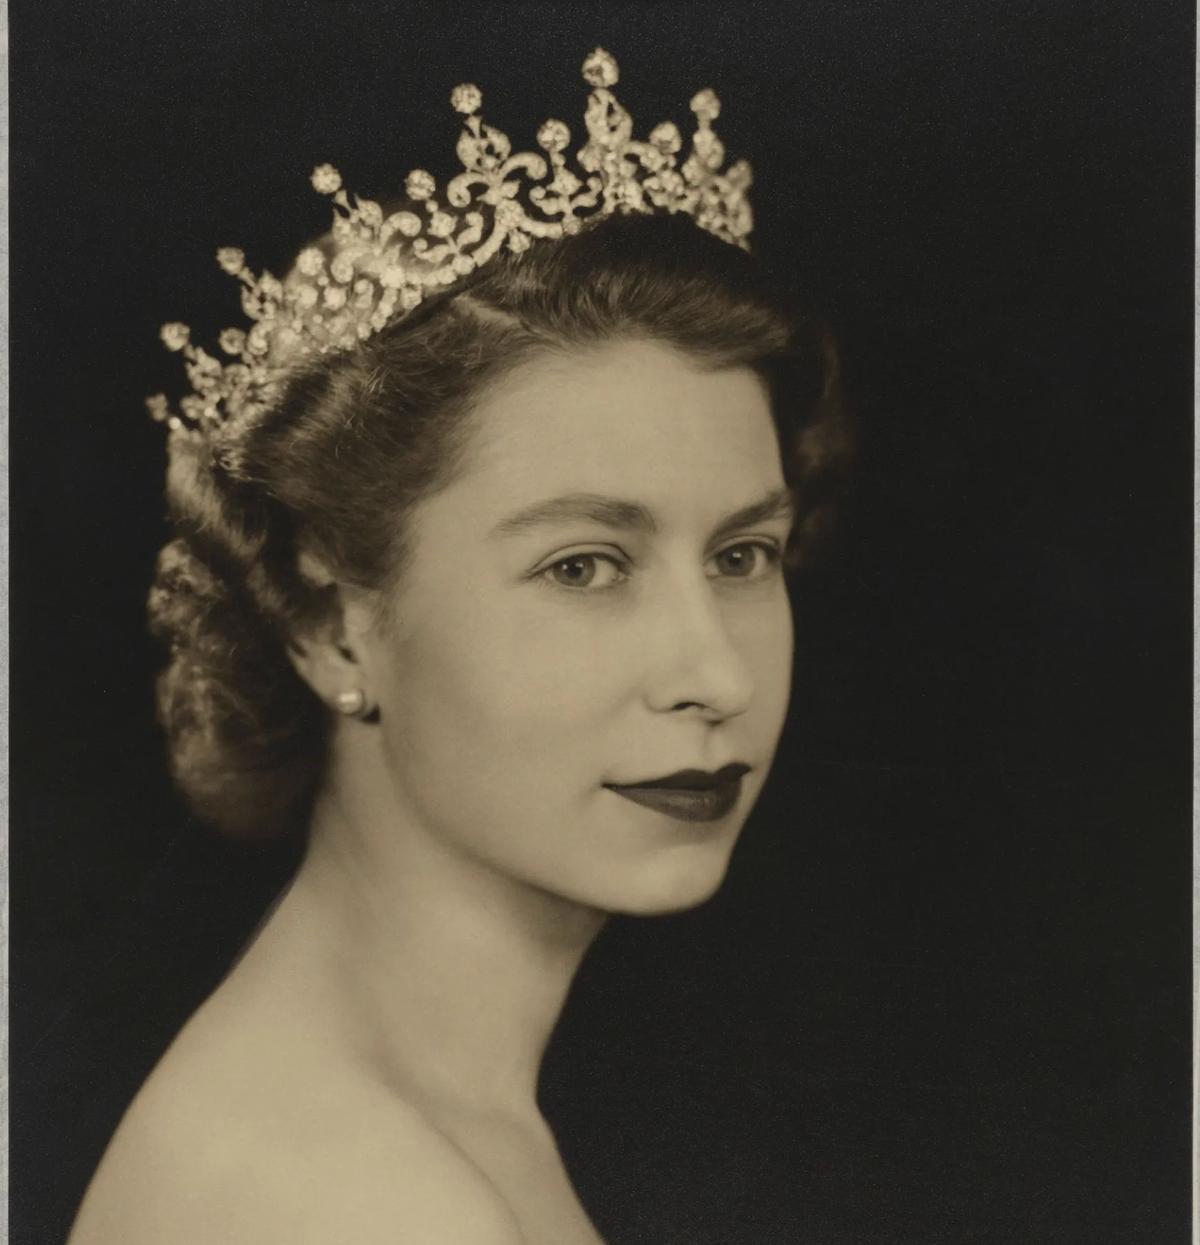 La reine Élisabeth II par Dorothy Wilding, 26 février 1952. © National Portrait Gallery, London